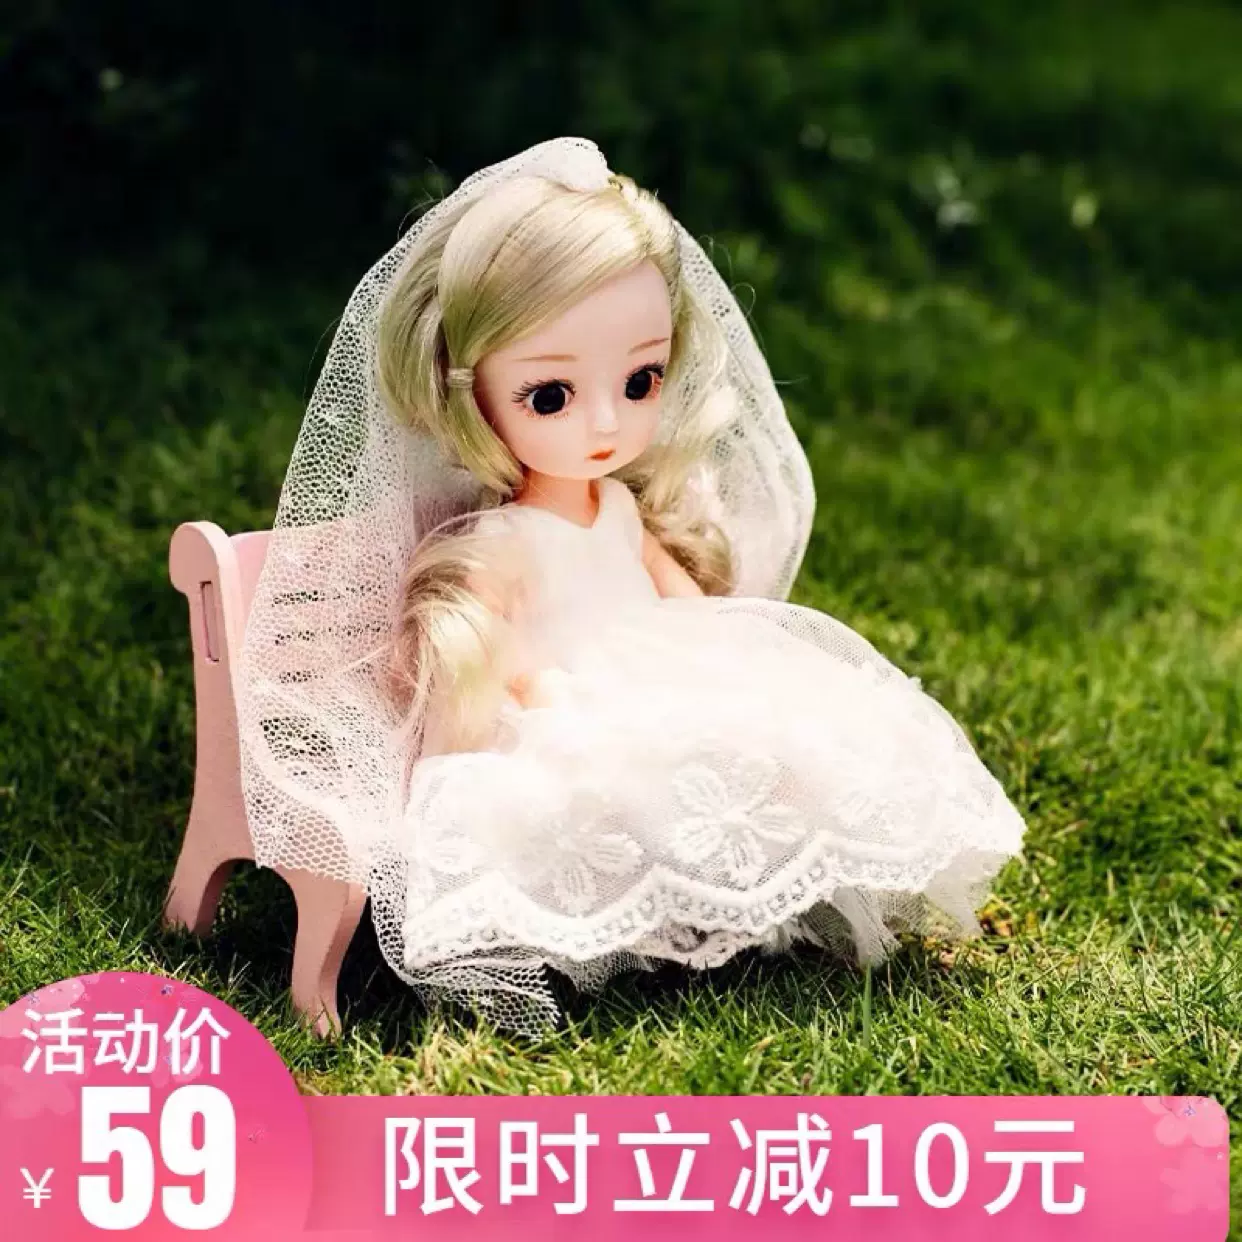 叮小马婚纱版Q萌可爱娃衣换装BJD娃娃套装OB11公仔人偶六一礼物-Taobao